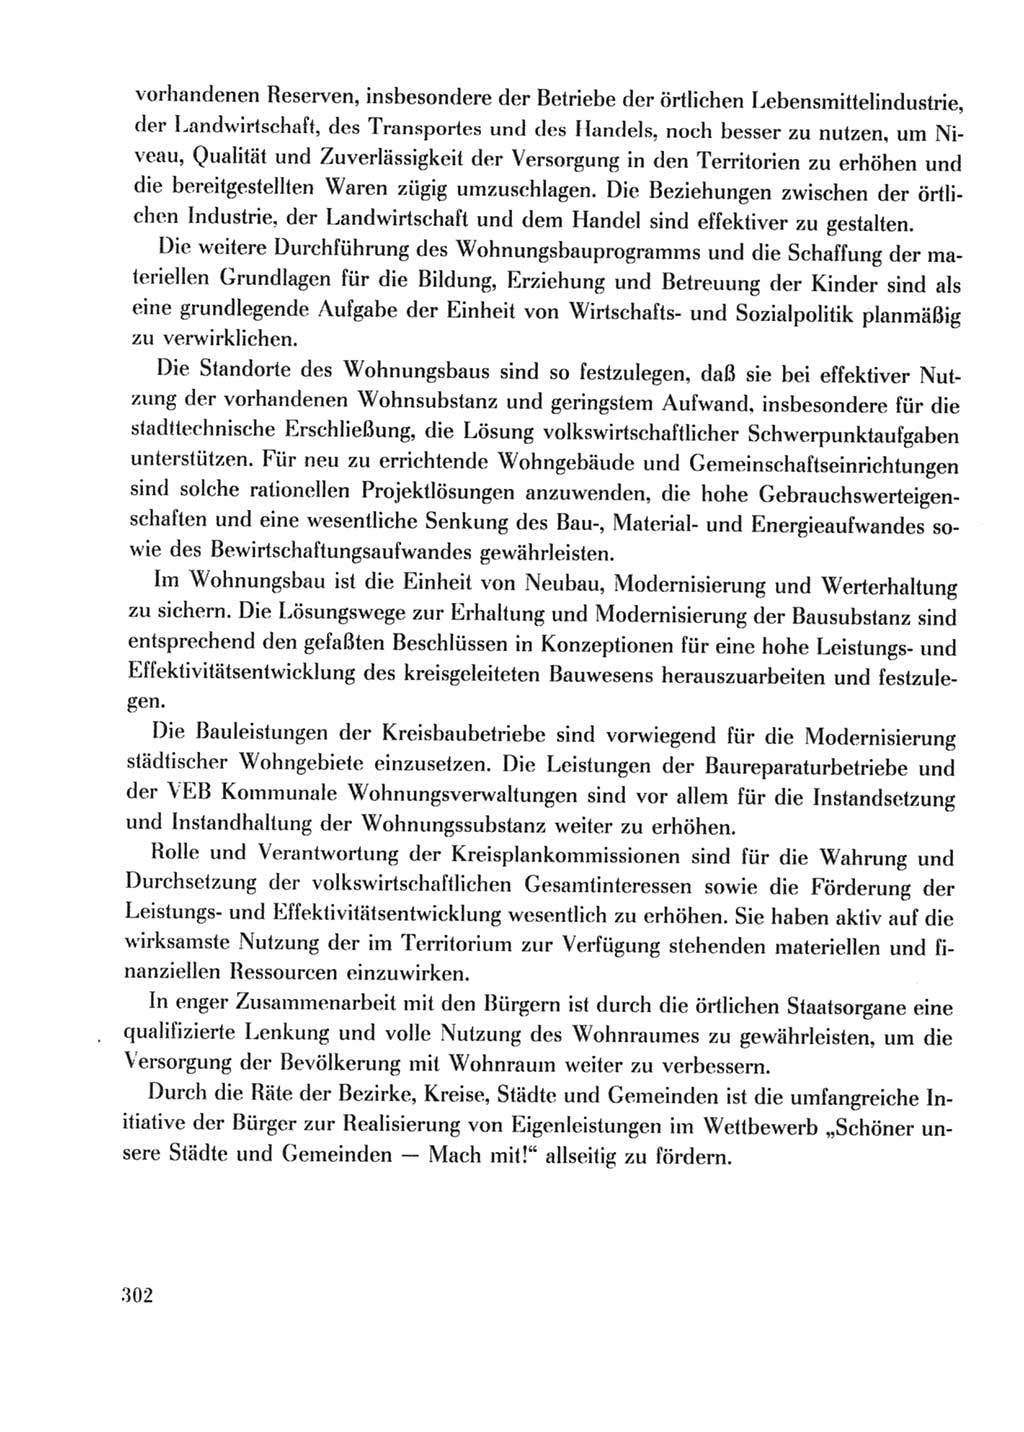 Protokoll der Verhandlungen des Ⅹ. Parteitages der Sozialistischen Einheitspartei Deutschlands (SED) [Deutsche Demokratische Republik (DDR)] 1981, Band 2, Seite 302 (Prot. Verh. Ⅹ. PT SED DDR 1981, Bd. 2, S. 302)